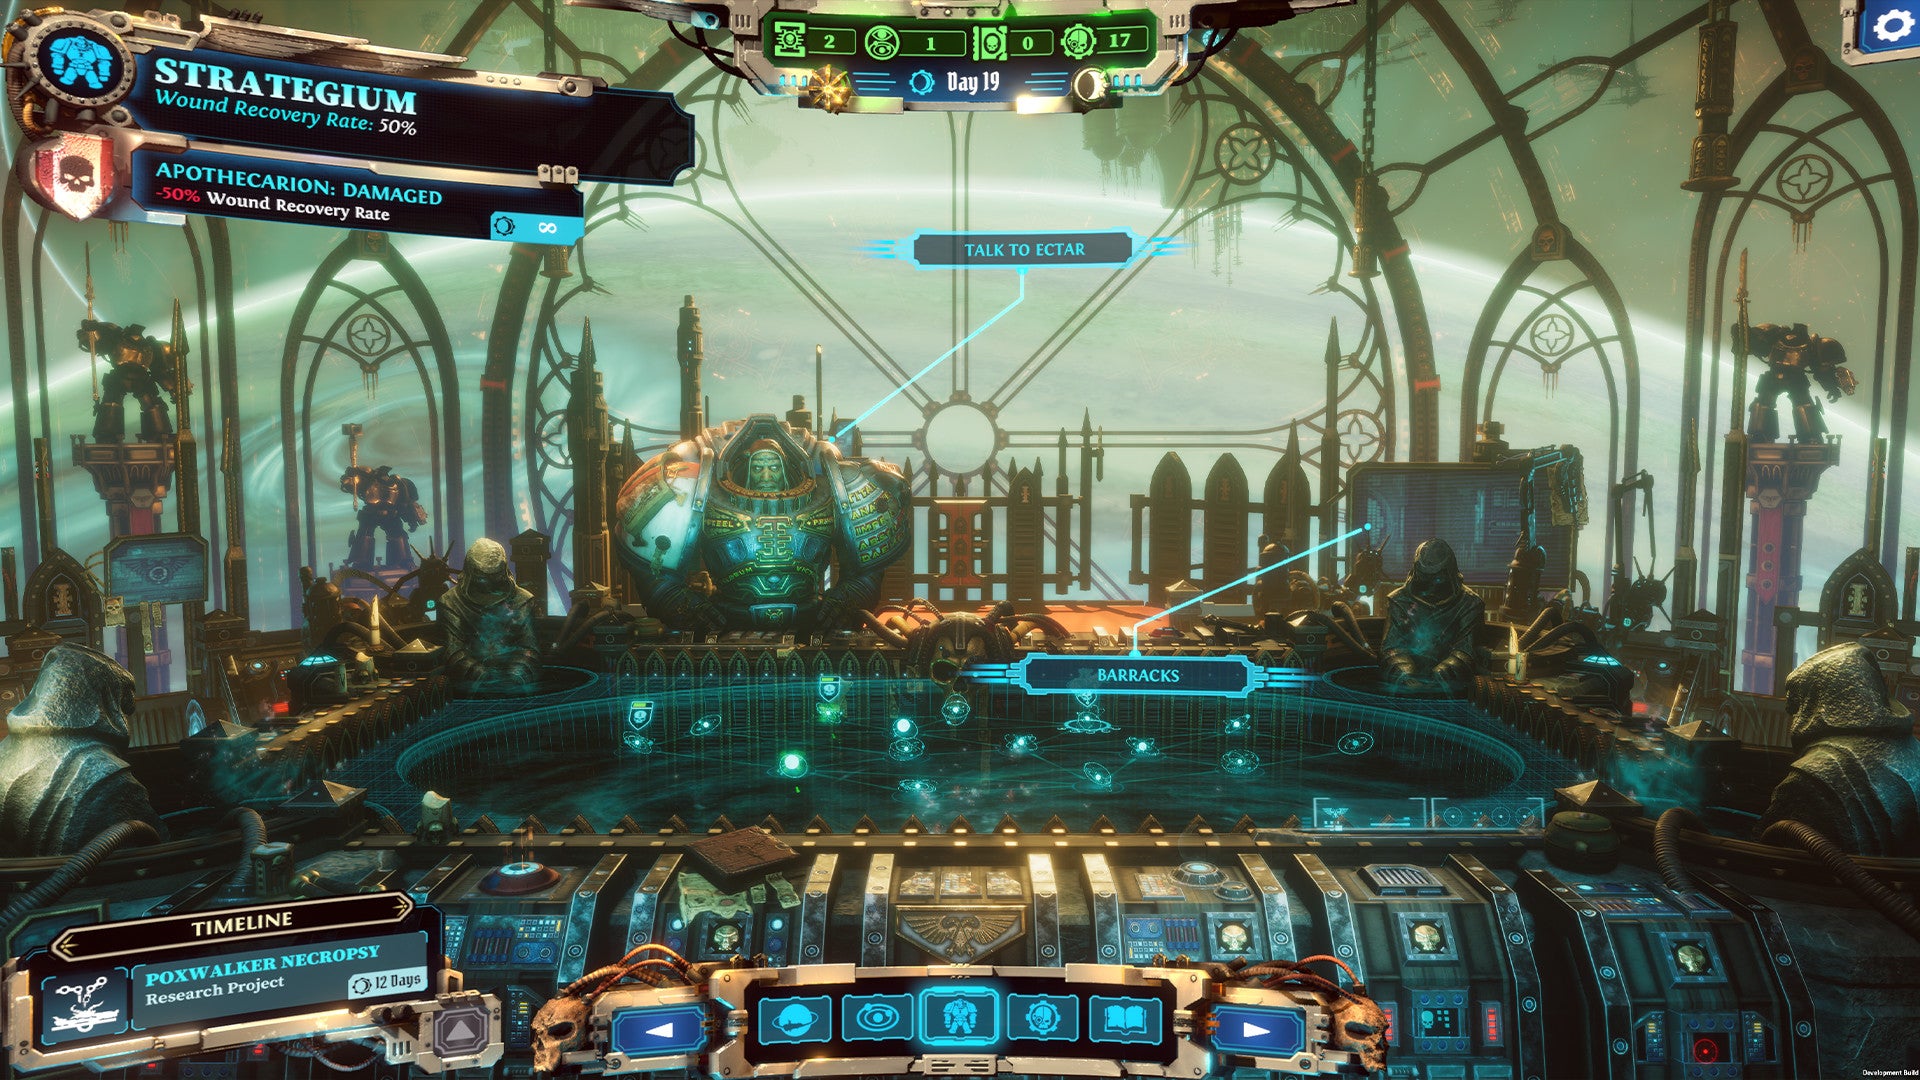 Ectar préside le Strategium dans un vaisseau spatial d'aspect gothique dans Warhammer 40K: Chaos Gate - Daemonhunters